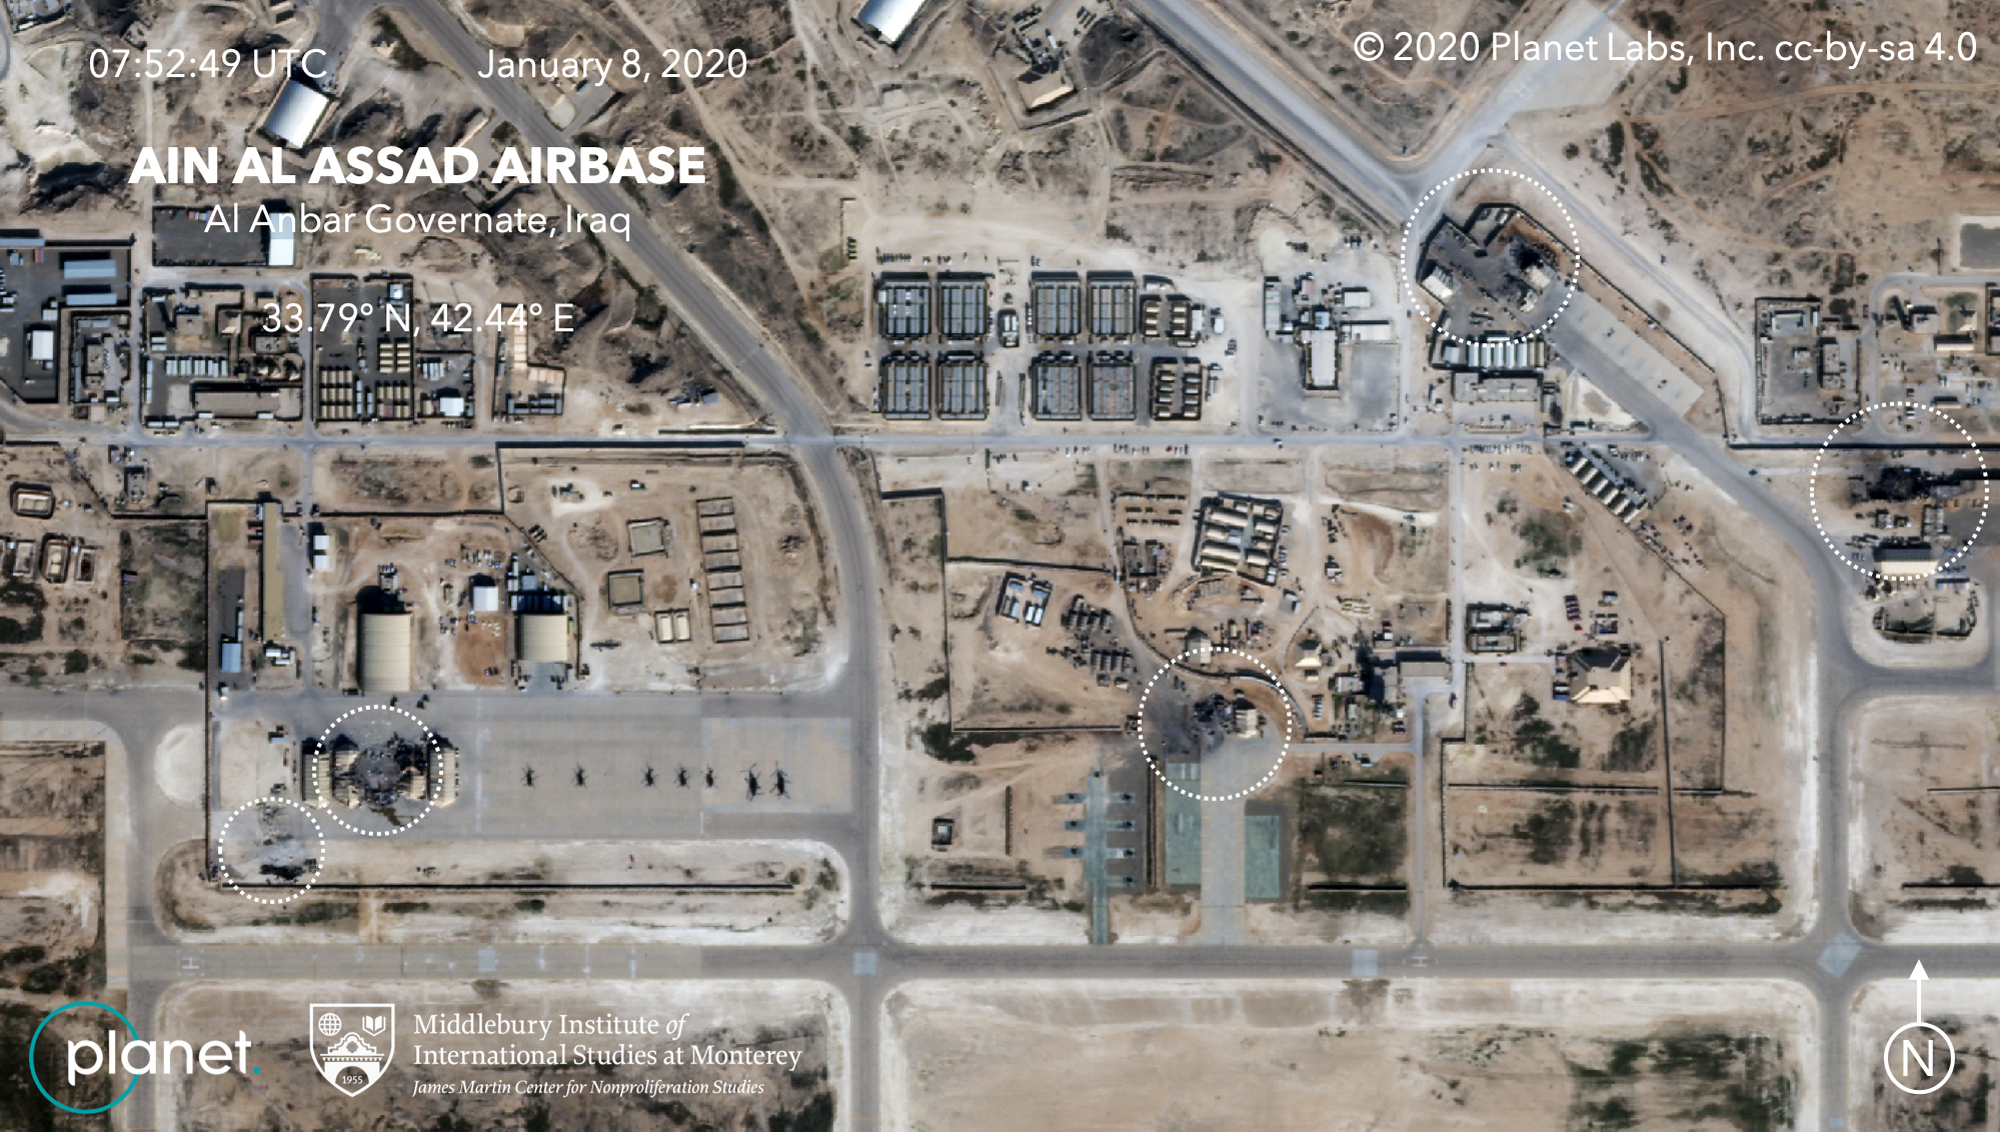 Οι πύραυλοι προσγειώνονται στην ιρακινή αεροπορική βάση που φιλοξενεί τις δυνάμεις των συμμαχικών ΗΠΑ